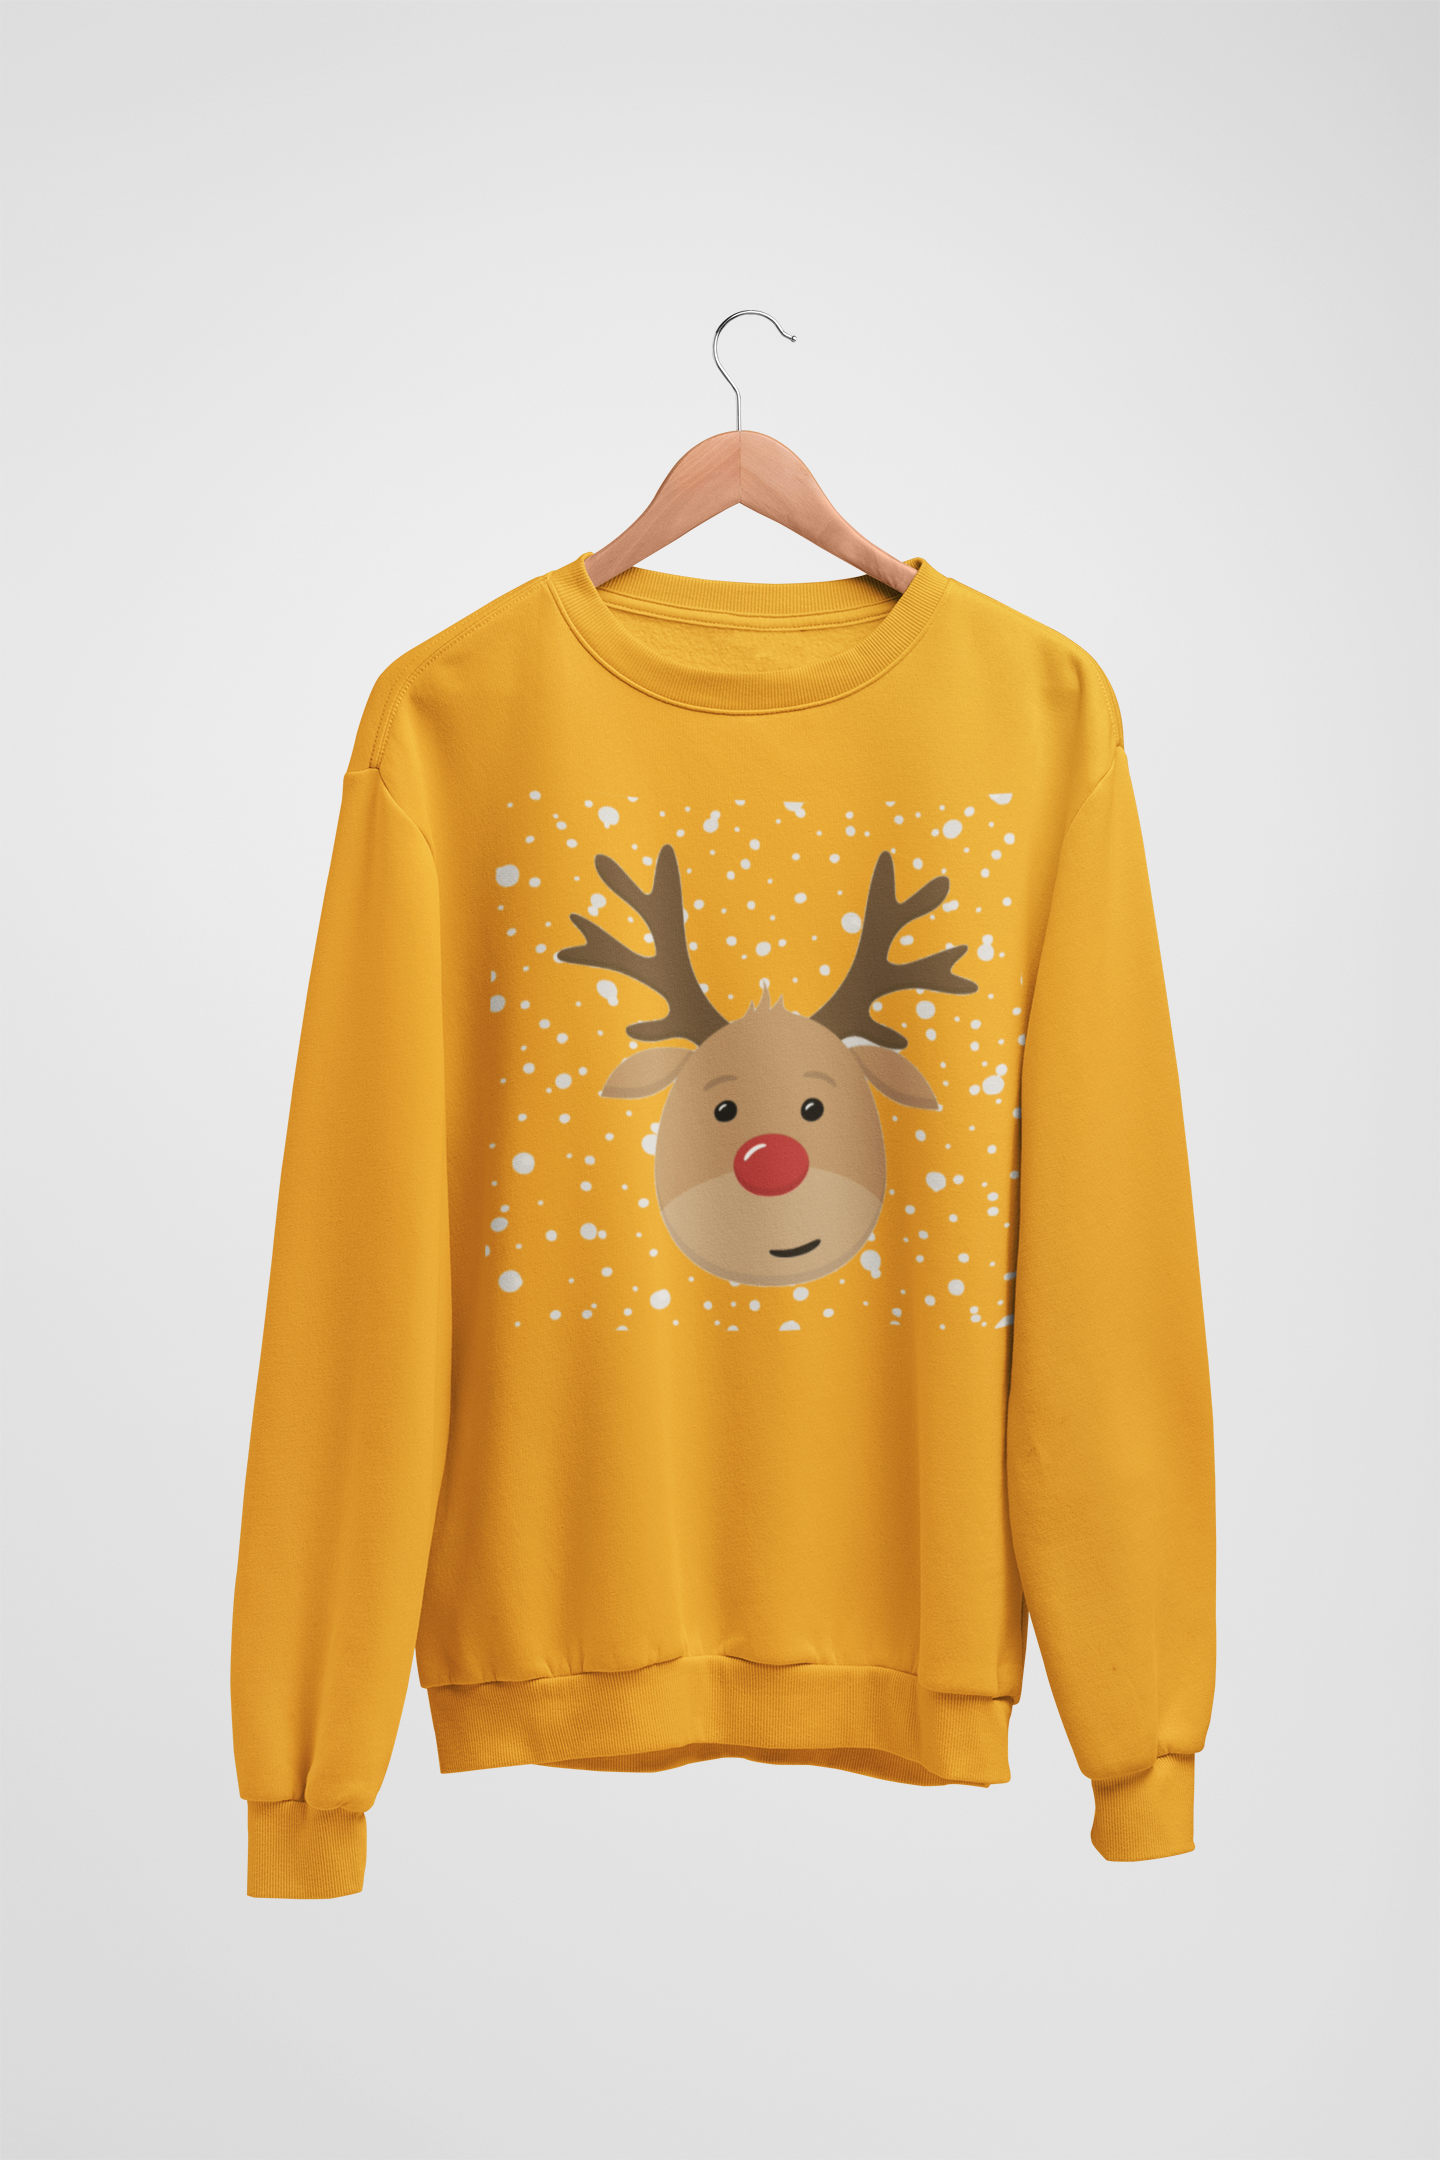 Reindeer Mustard Yellow Sweatshirt For Men